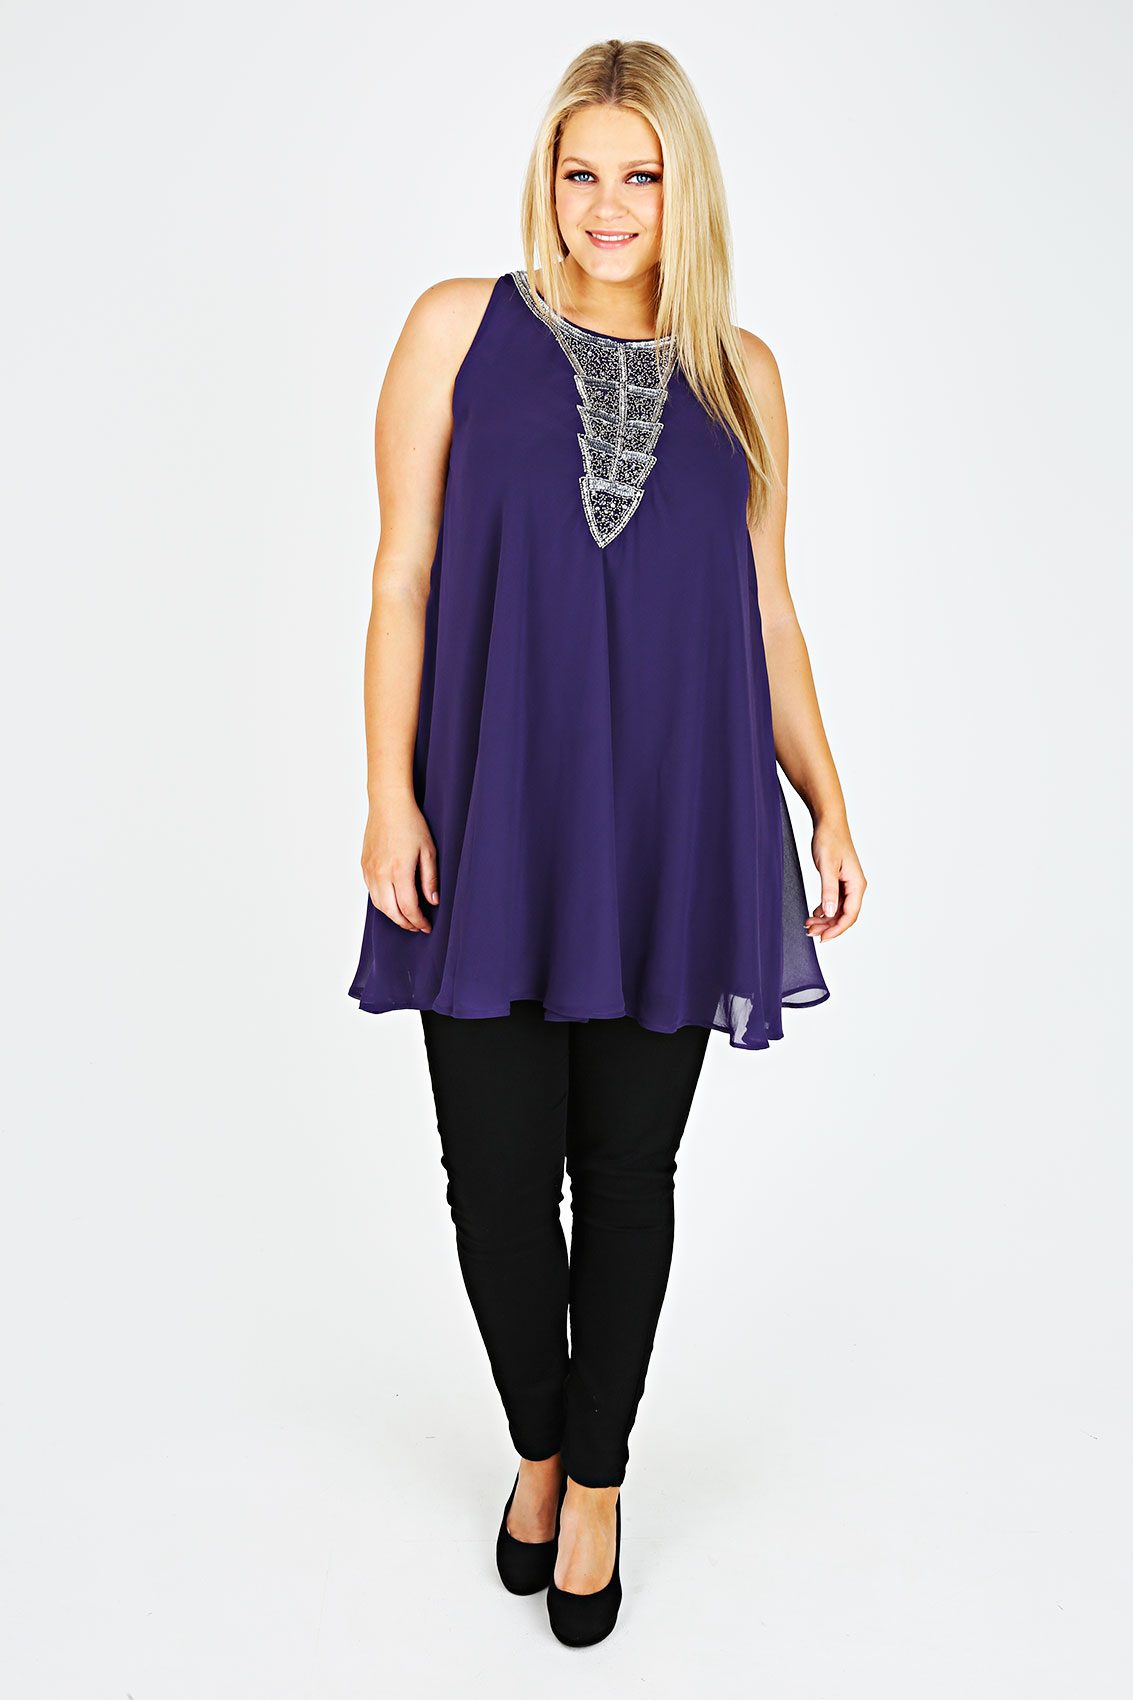 Purple Chiffon Sleeveless Tunic With Silver Embellishment Plus size 16 ...